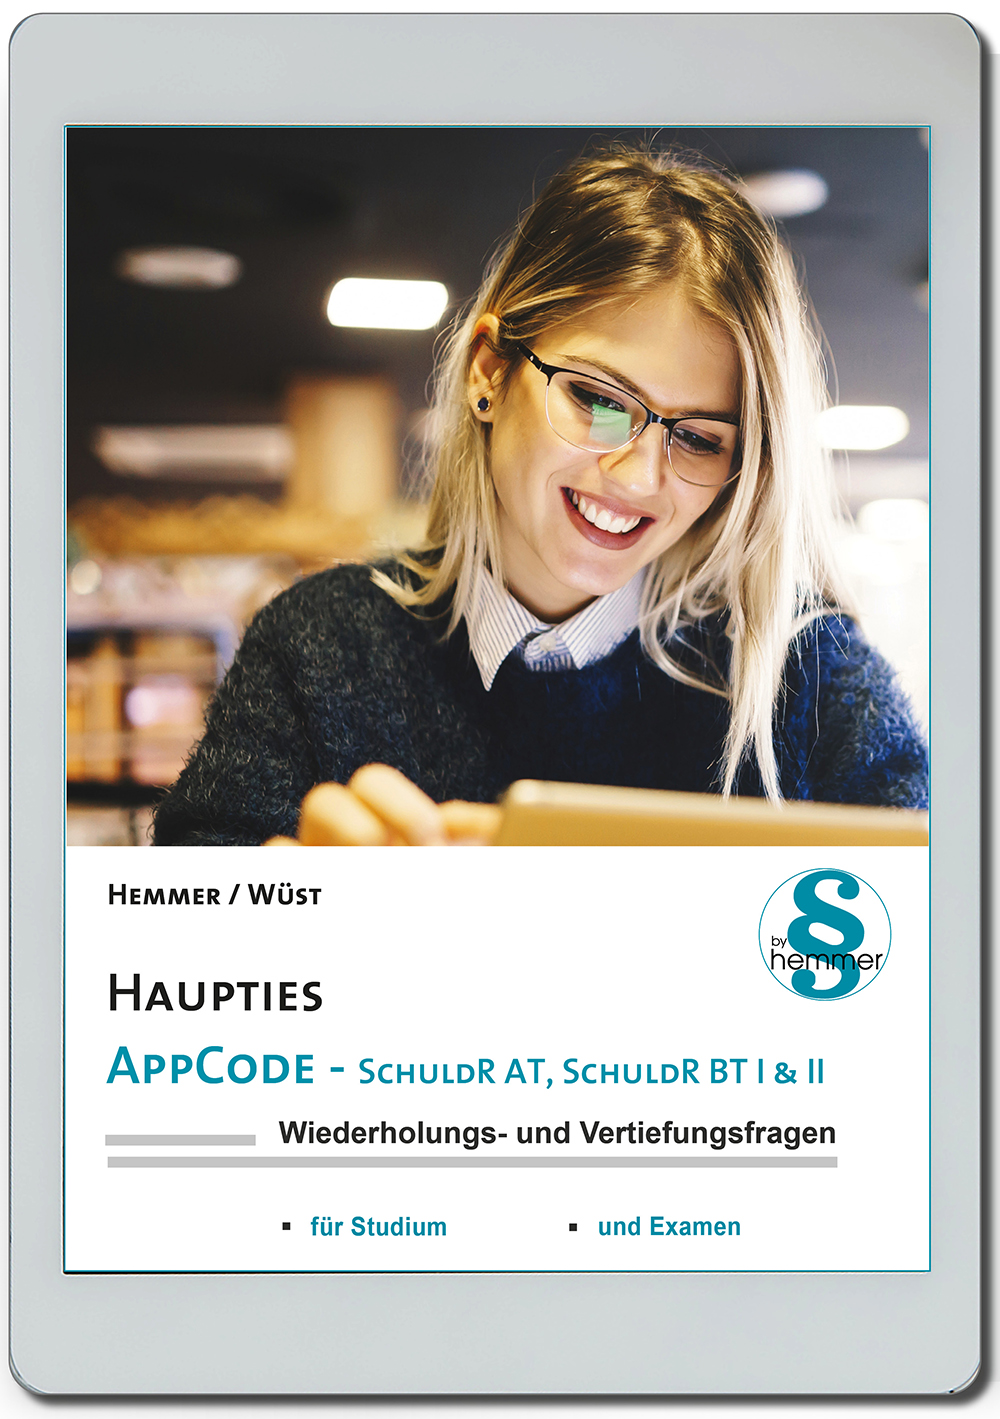 AppCode - haupties - Schuldrecht AT, Schuldrecht BT I & II